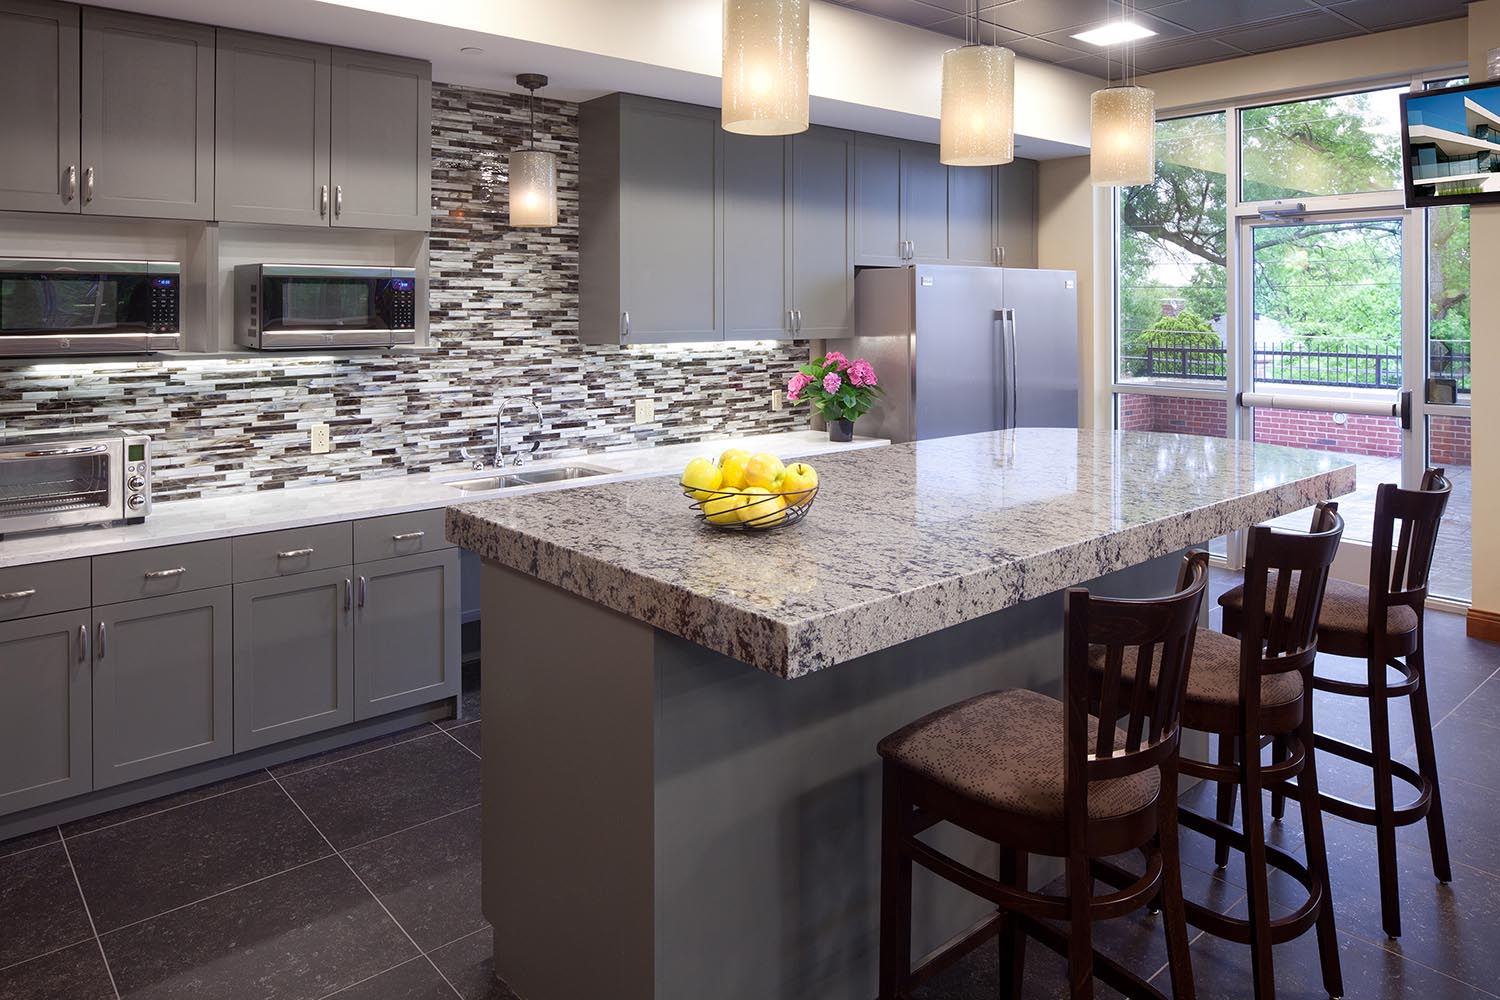 AOFEI tiles grey quartz bathroom tiles suppliers for outdoor kitchen 4